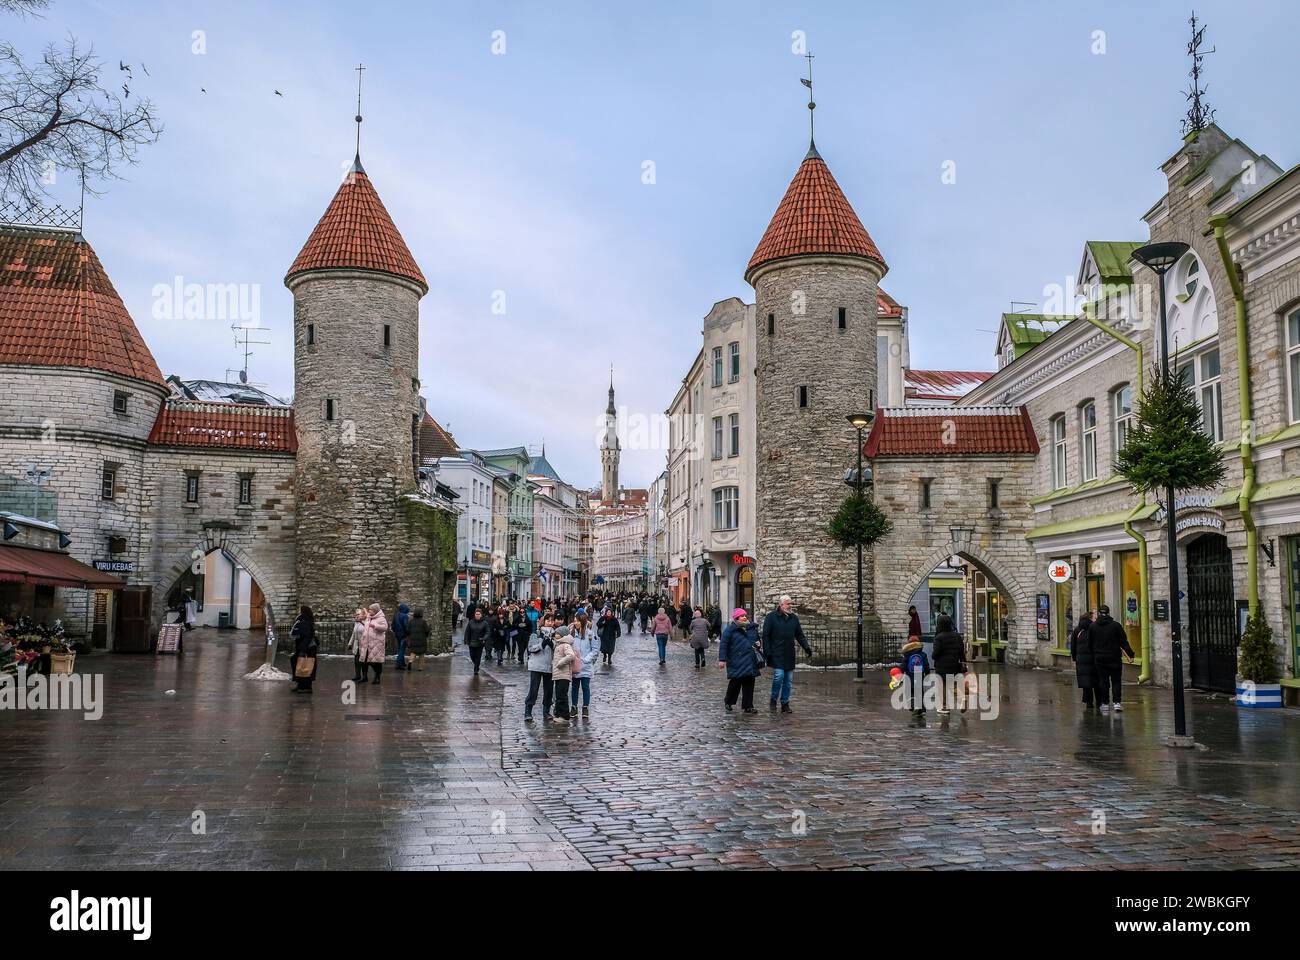 Tallinn, Estland - Altstadt von Tallinn, Lehm Tor, Wachtürme des mittelalterlichen Stadttors Viru, die Viru ist die wichtigste Einkaufsstraße der Stadt, hinter dem Turm des Rathauses am Rathausplatz. Stockfoto